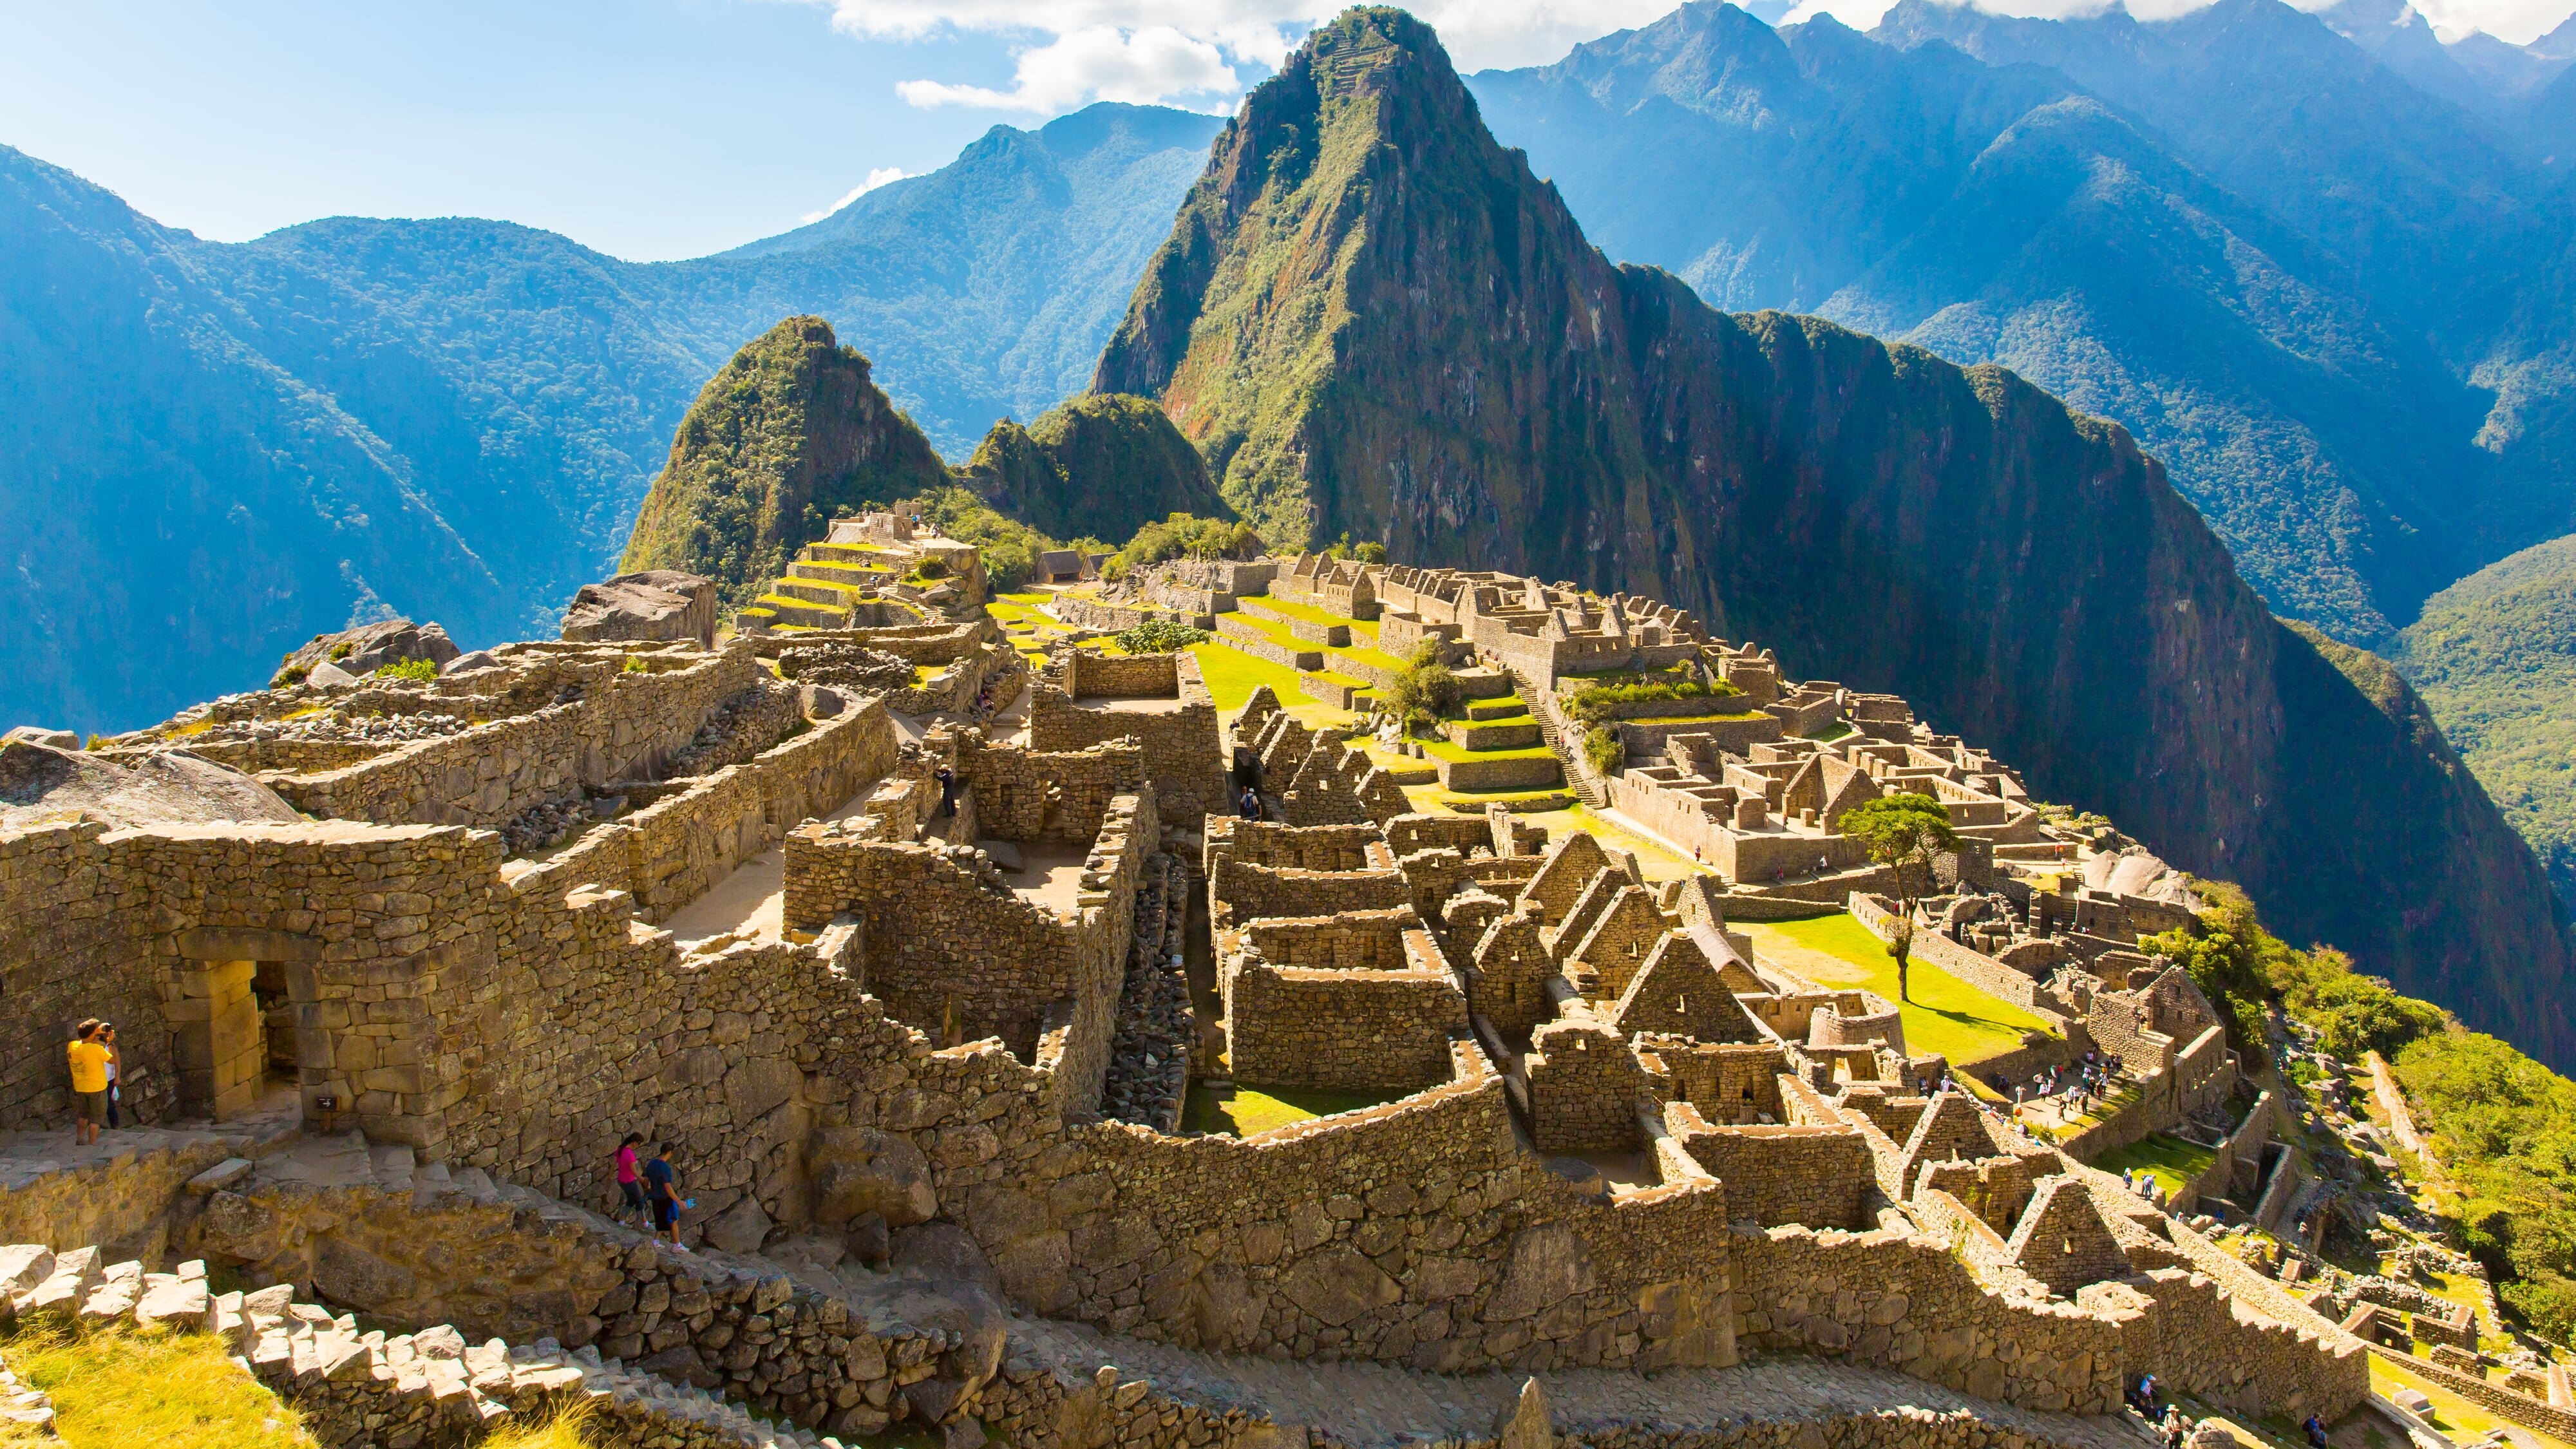 Himmelspfade in den Anden – Peru von Machu Picchu zum Titicacasee